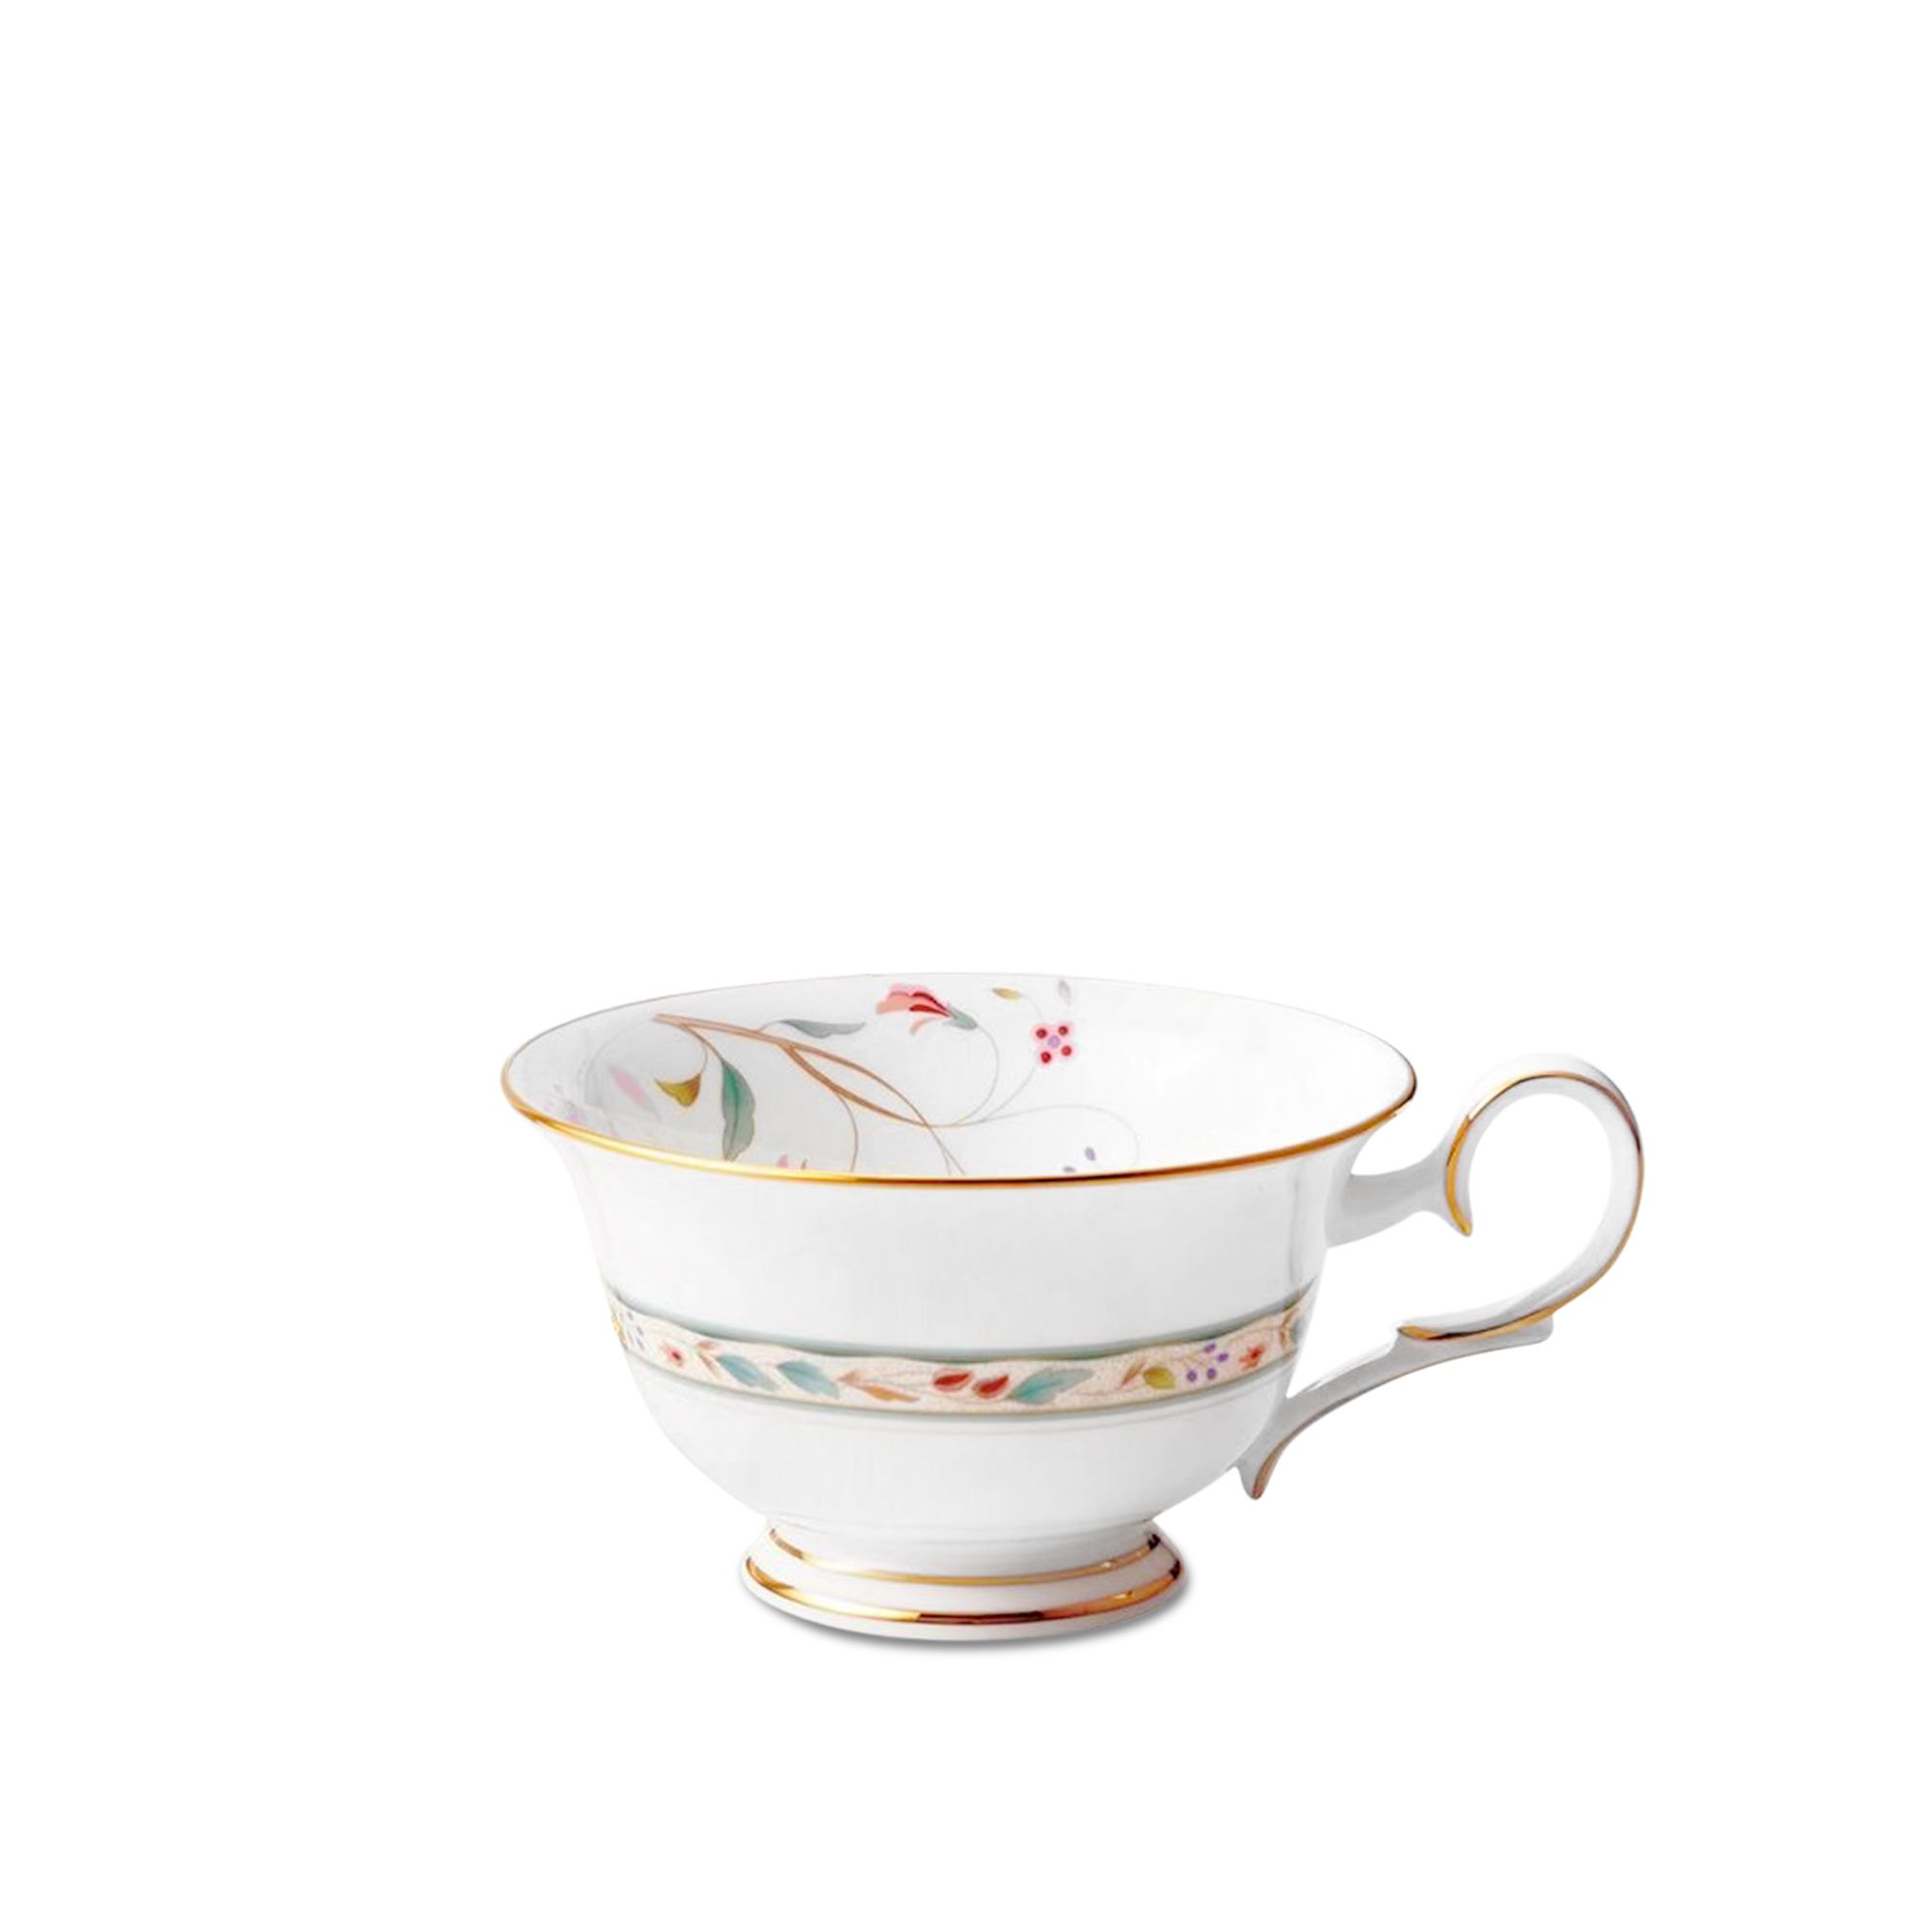  Chén trà (tách trà) màu hồng 215ml | Hana Sarasa 4409-5L-50717CA 